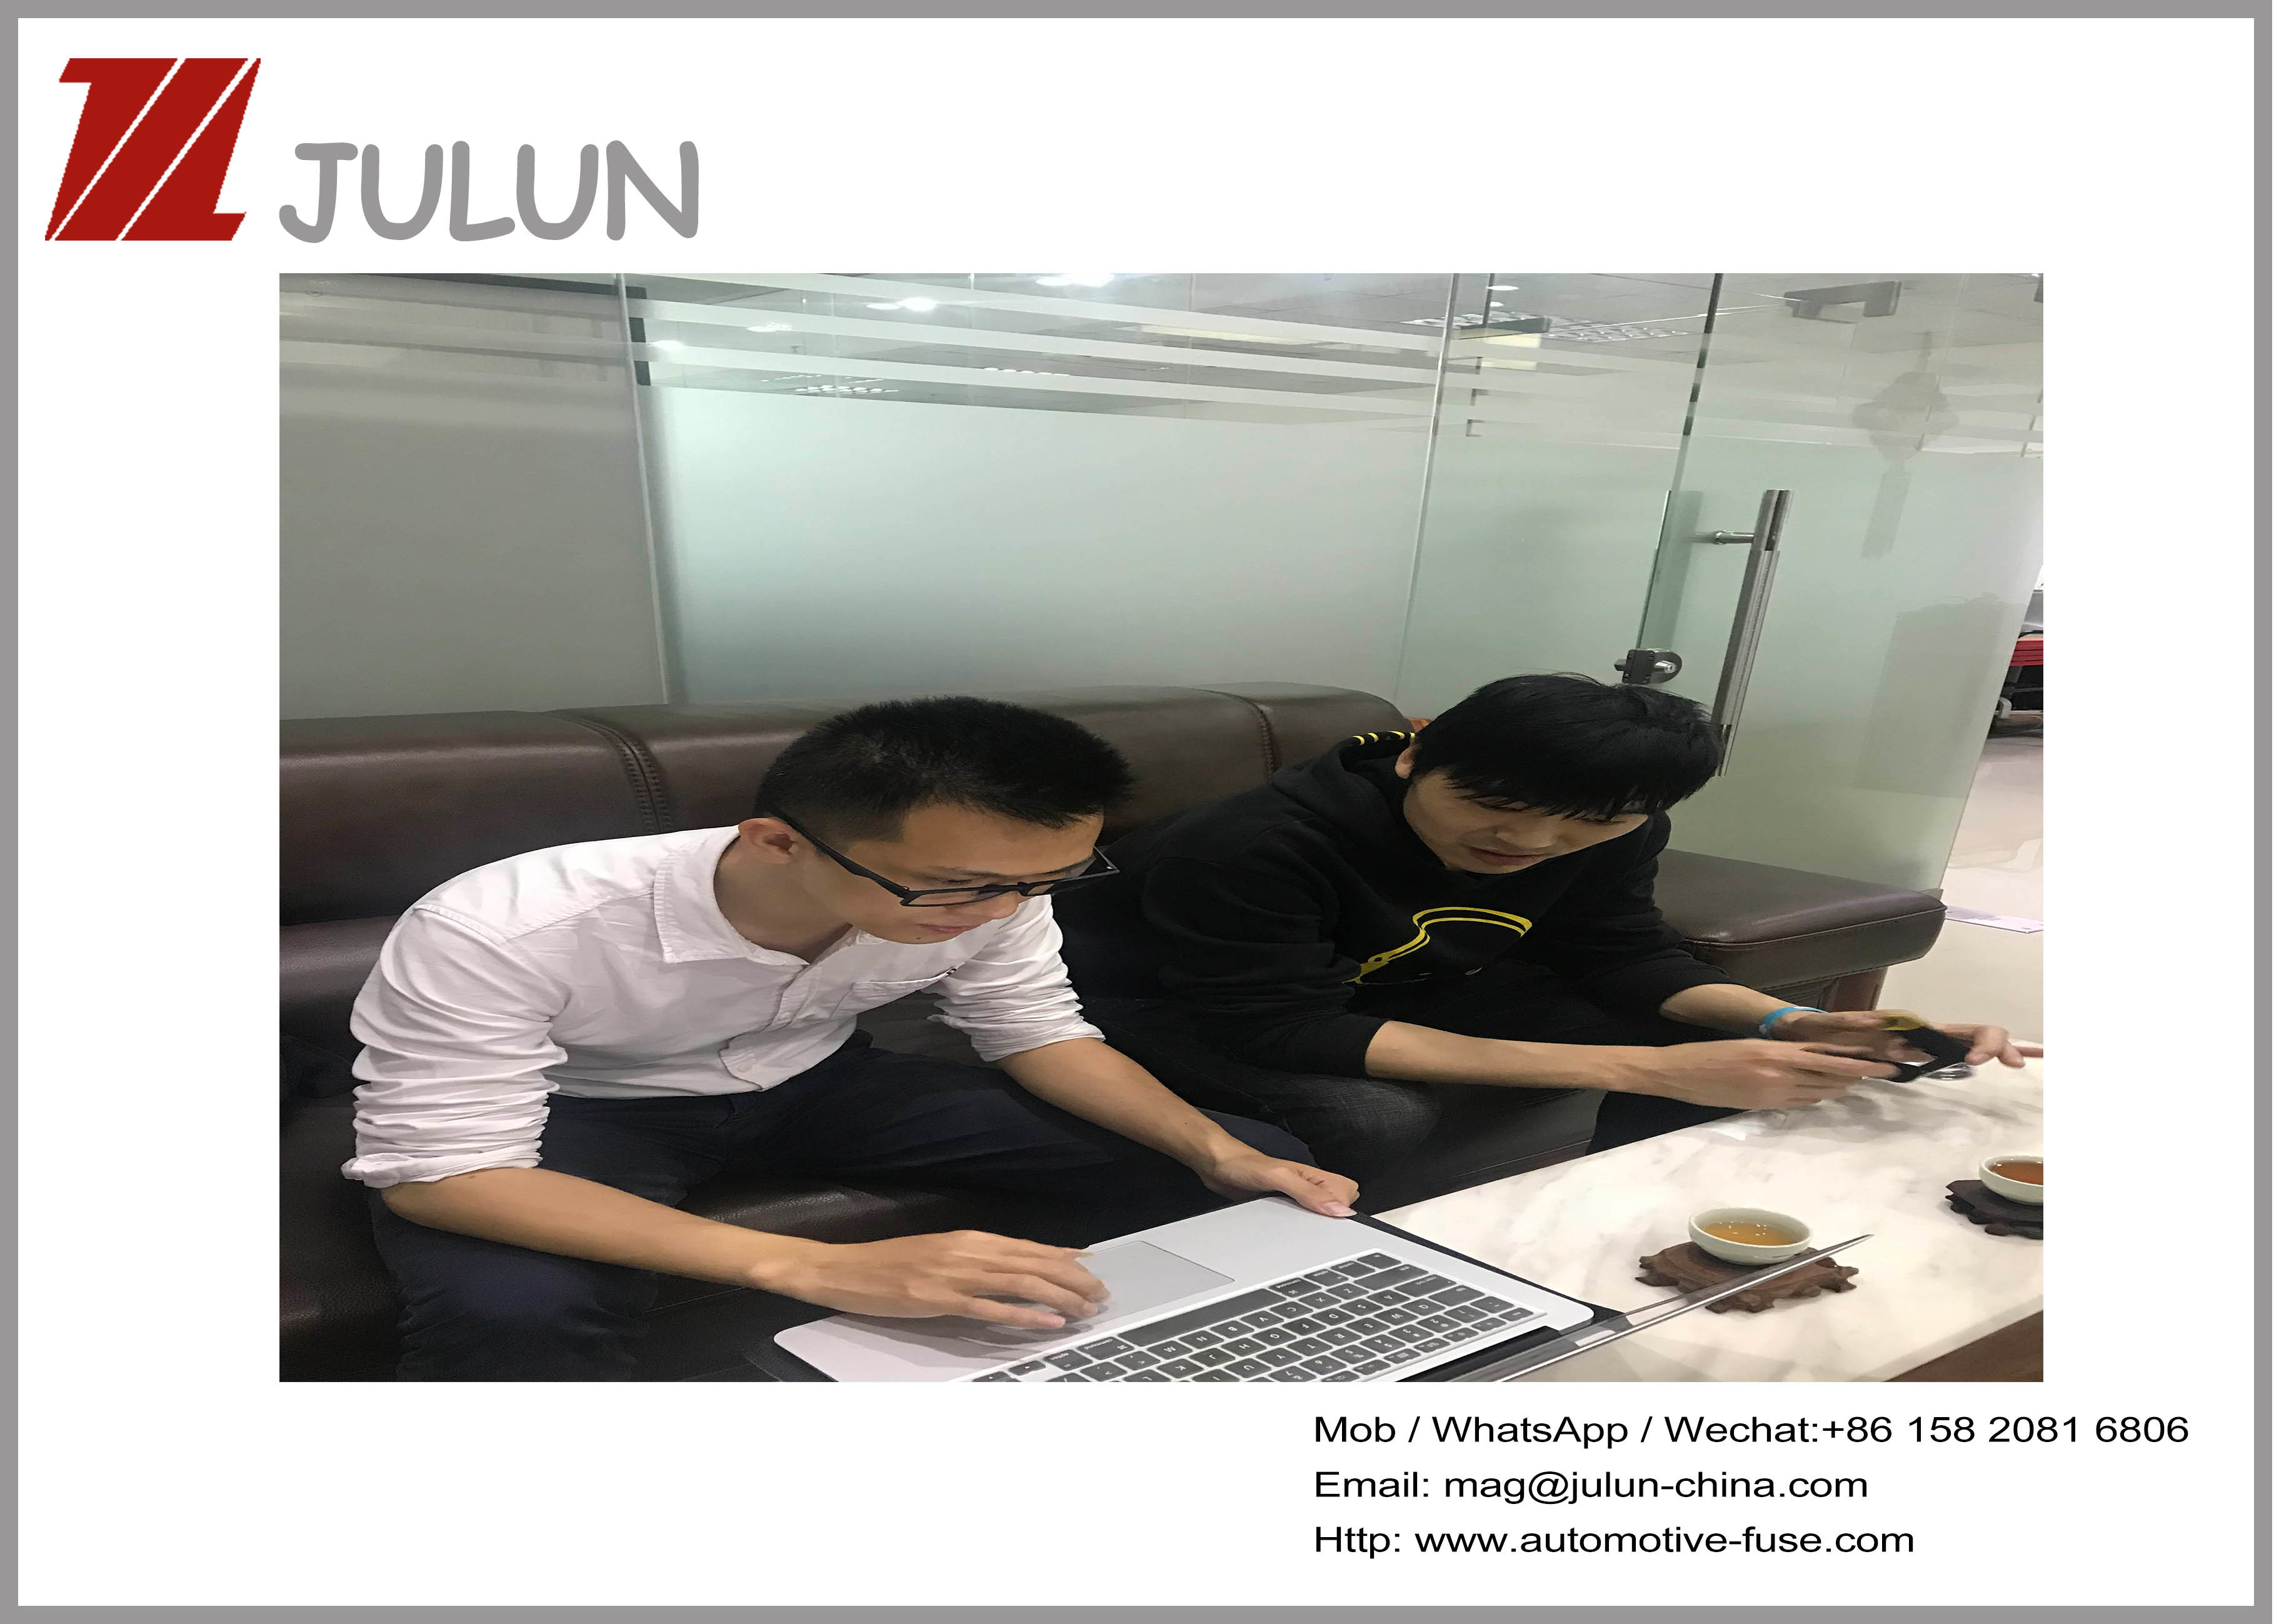 จีน JULUN (H.K)CO.,LTD (DONGGUAN JULUN ELECTRONICS CO.,LTD) รายละเอียด บริษัท